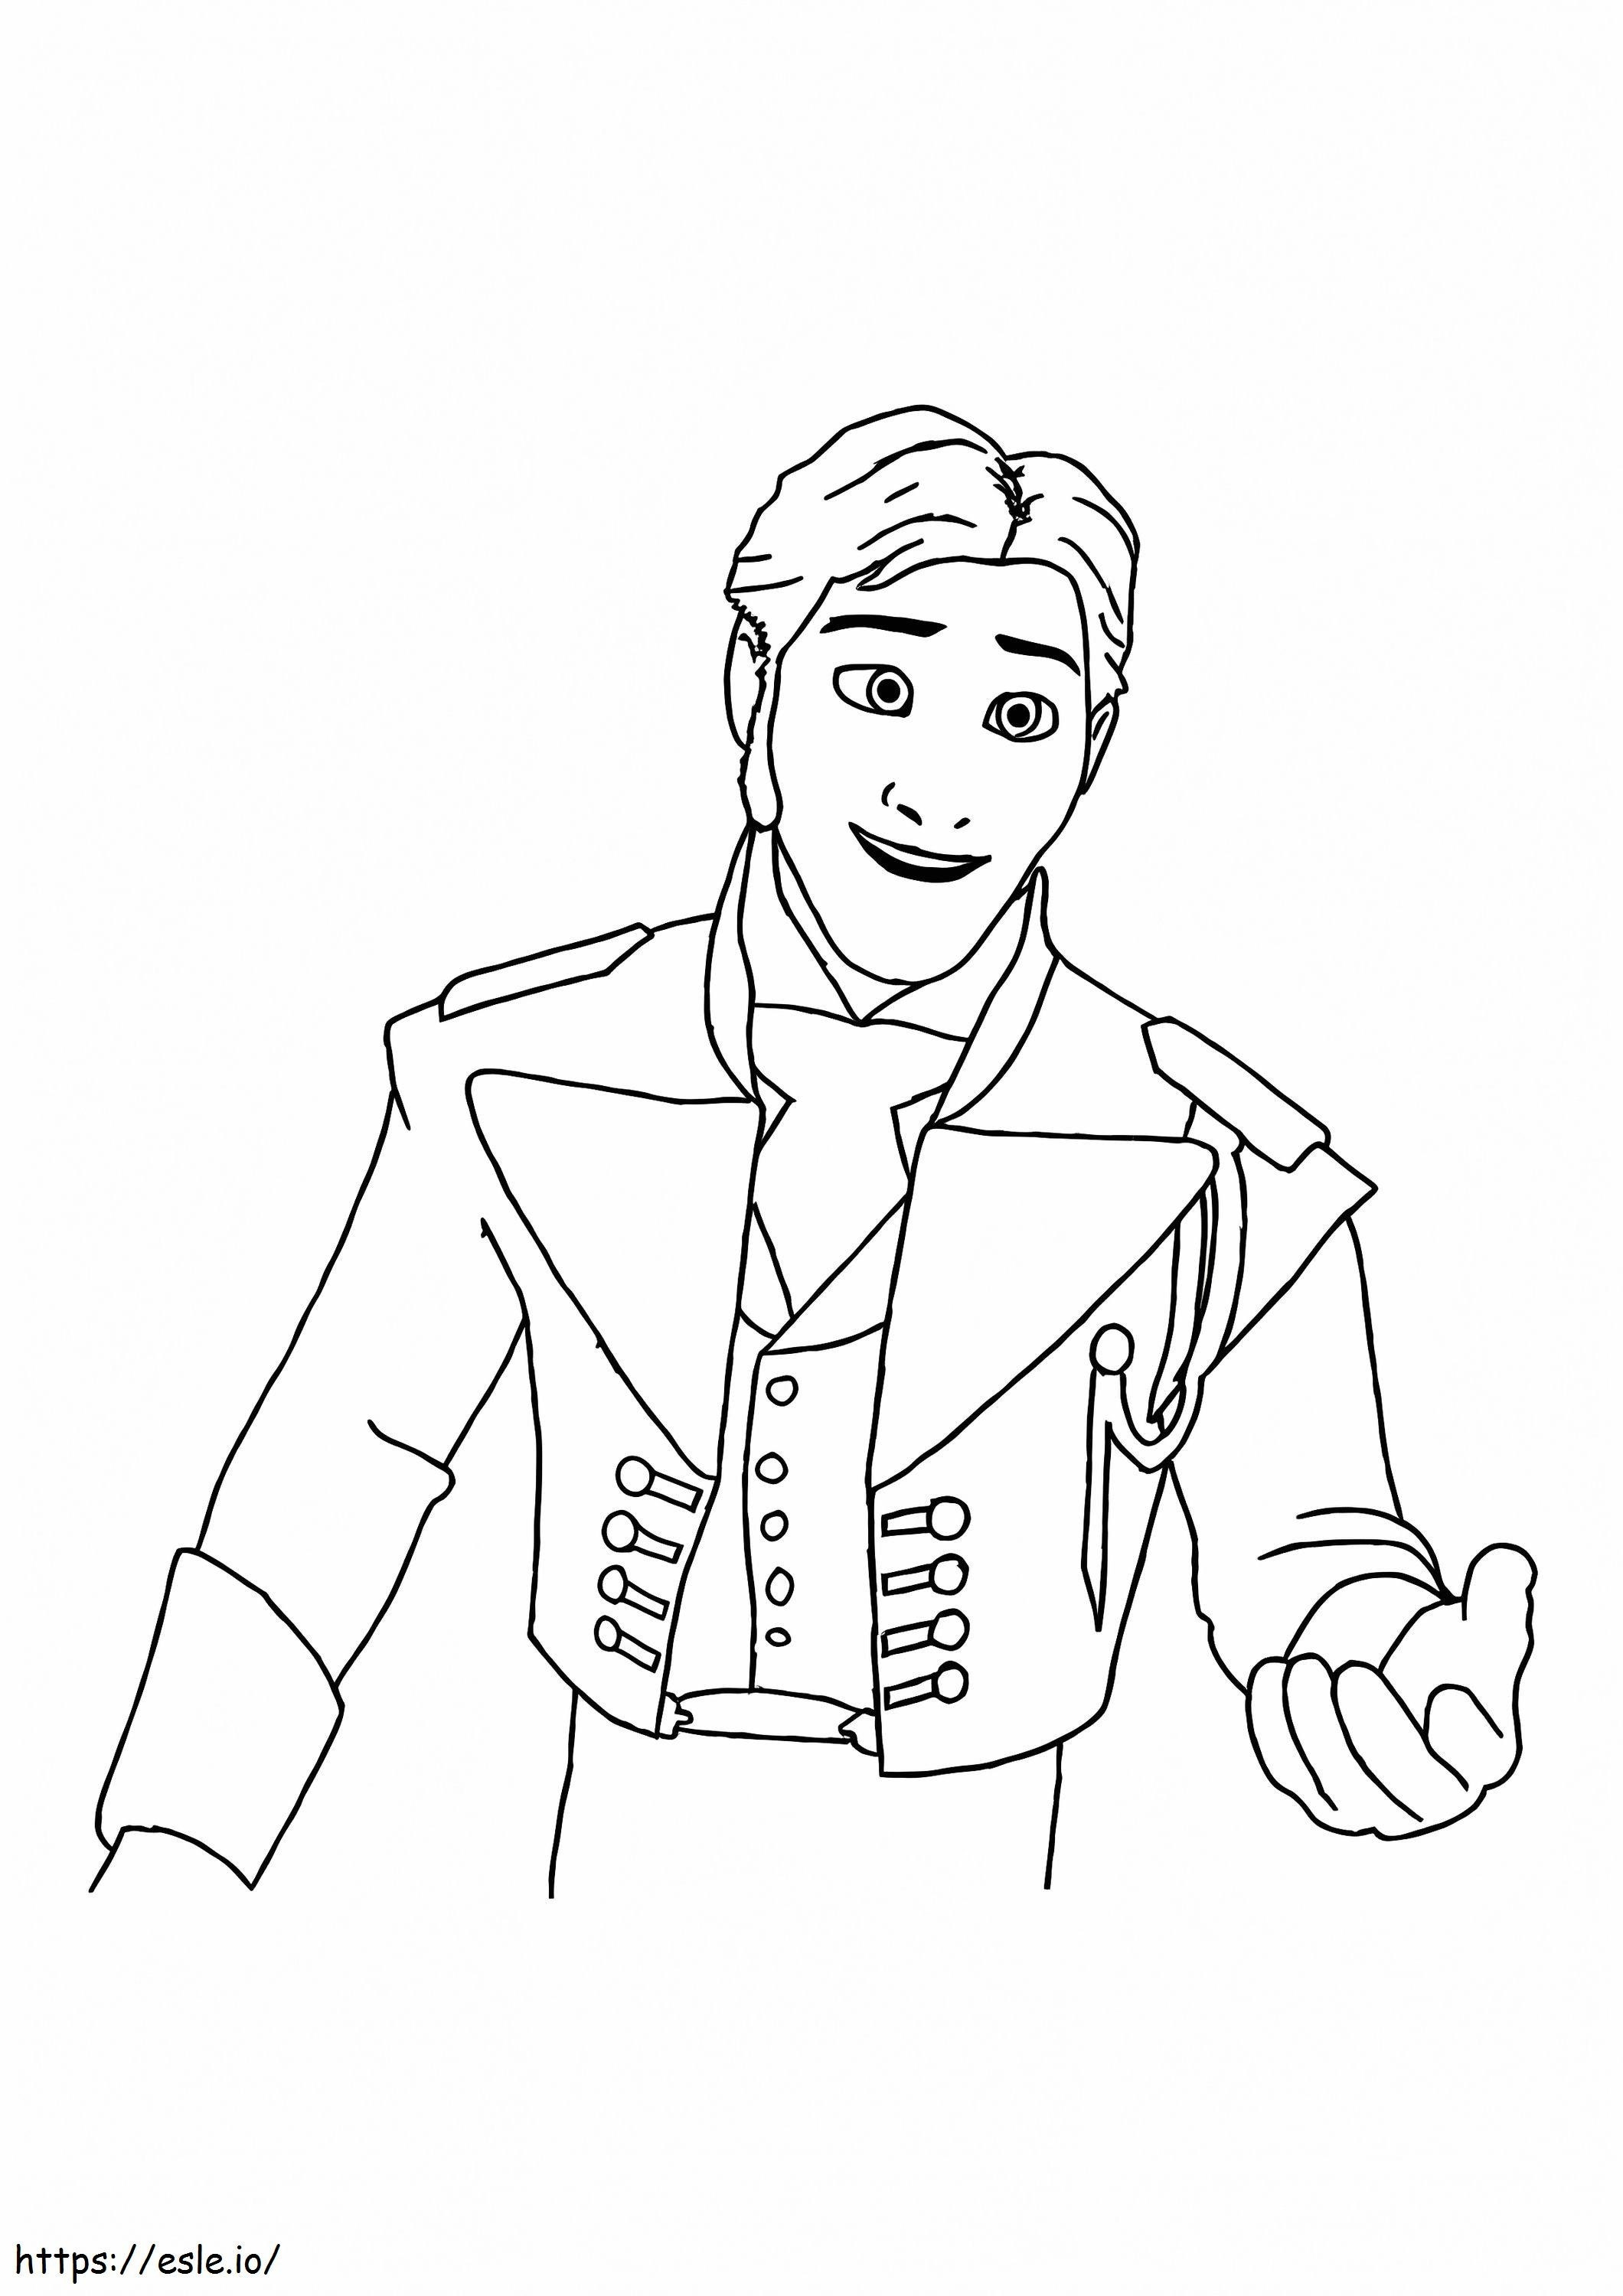 Príncipe Hans está sorrindo para colorir